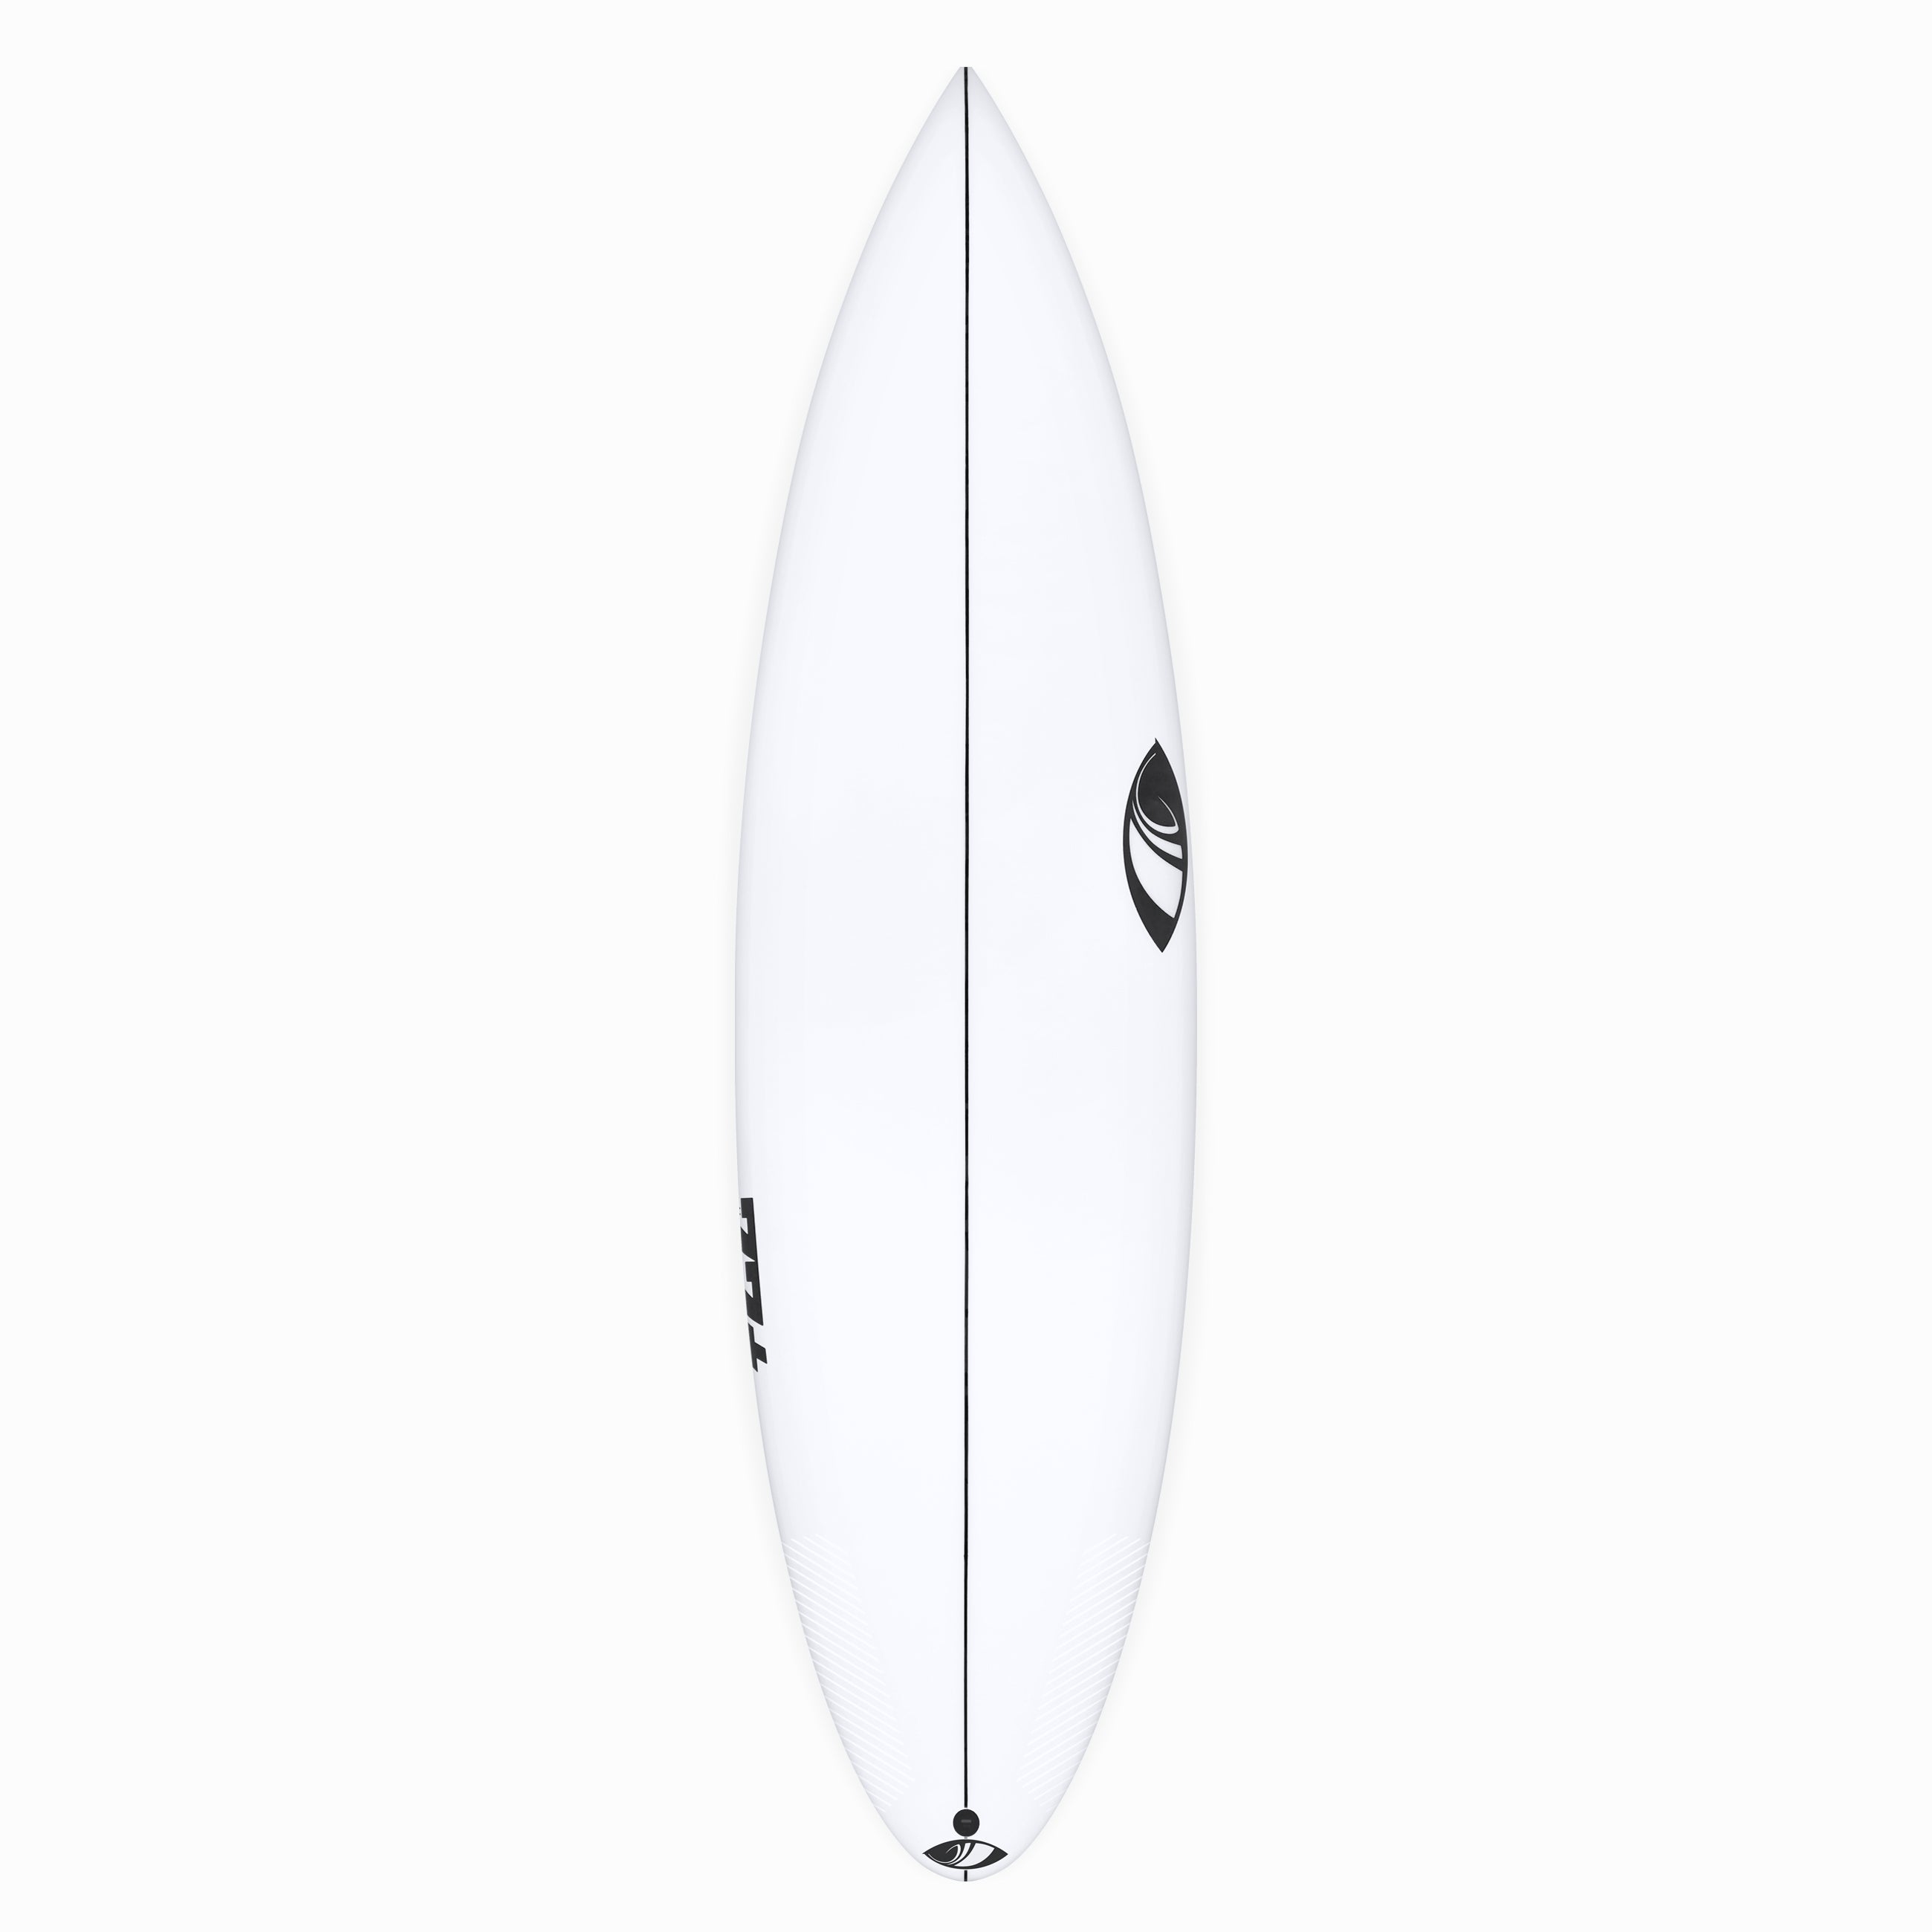 XL Range – Sharp Eye Surfboards